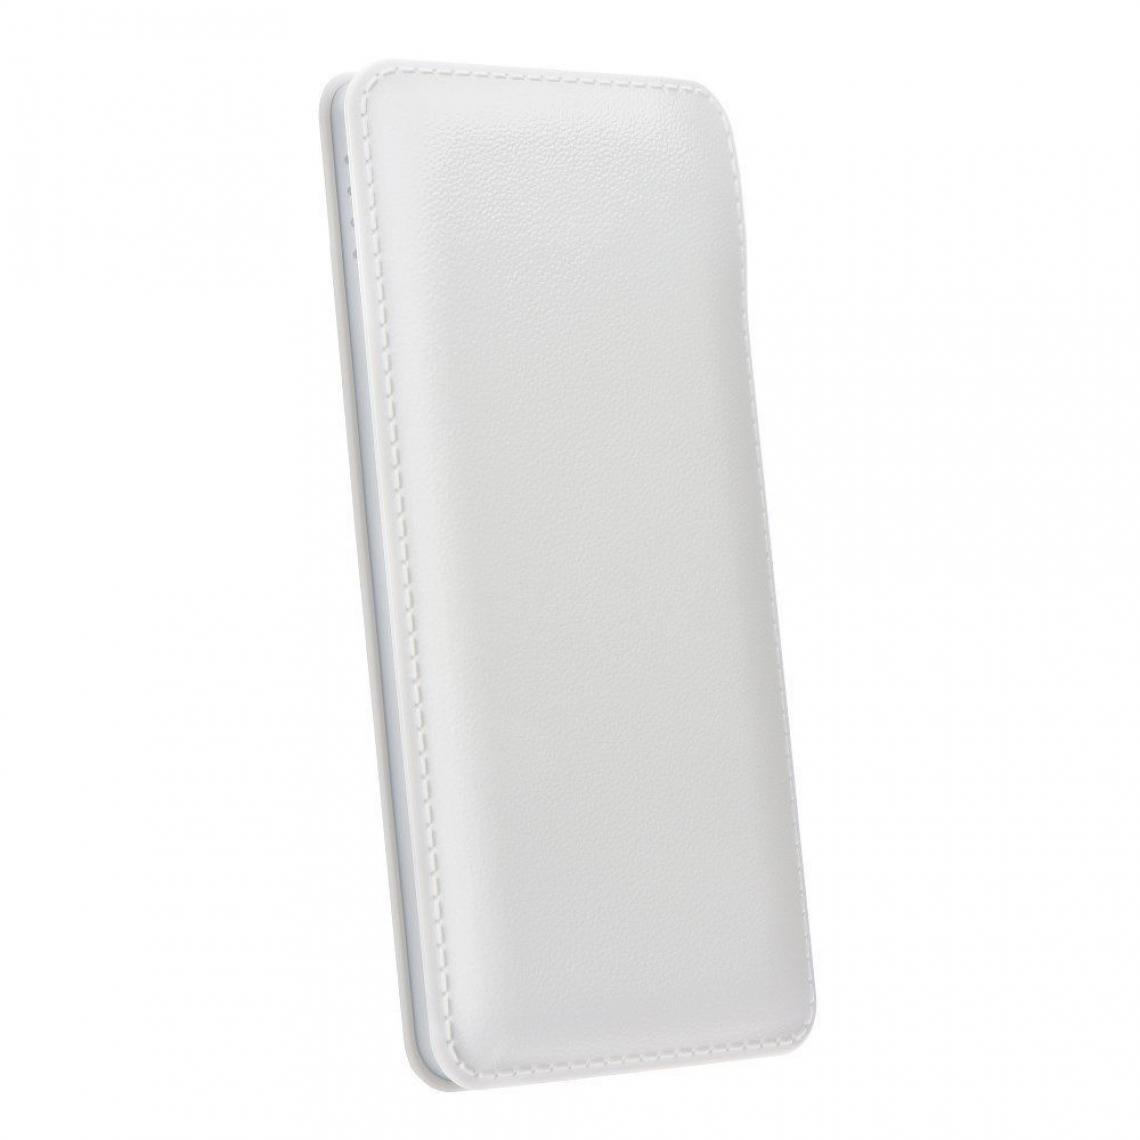 Ozzzo - Chargeur batterie externe 10000mAh powerbank ozzzo blanc pour Samsung Galaxy Z Flip 5G - Autres accessoires smartphone